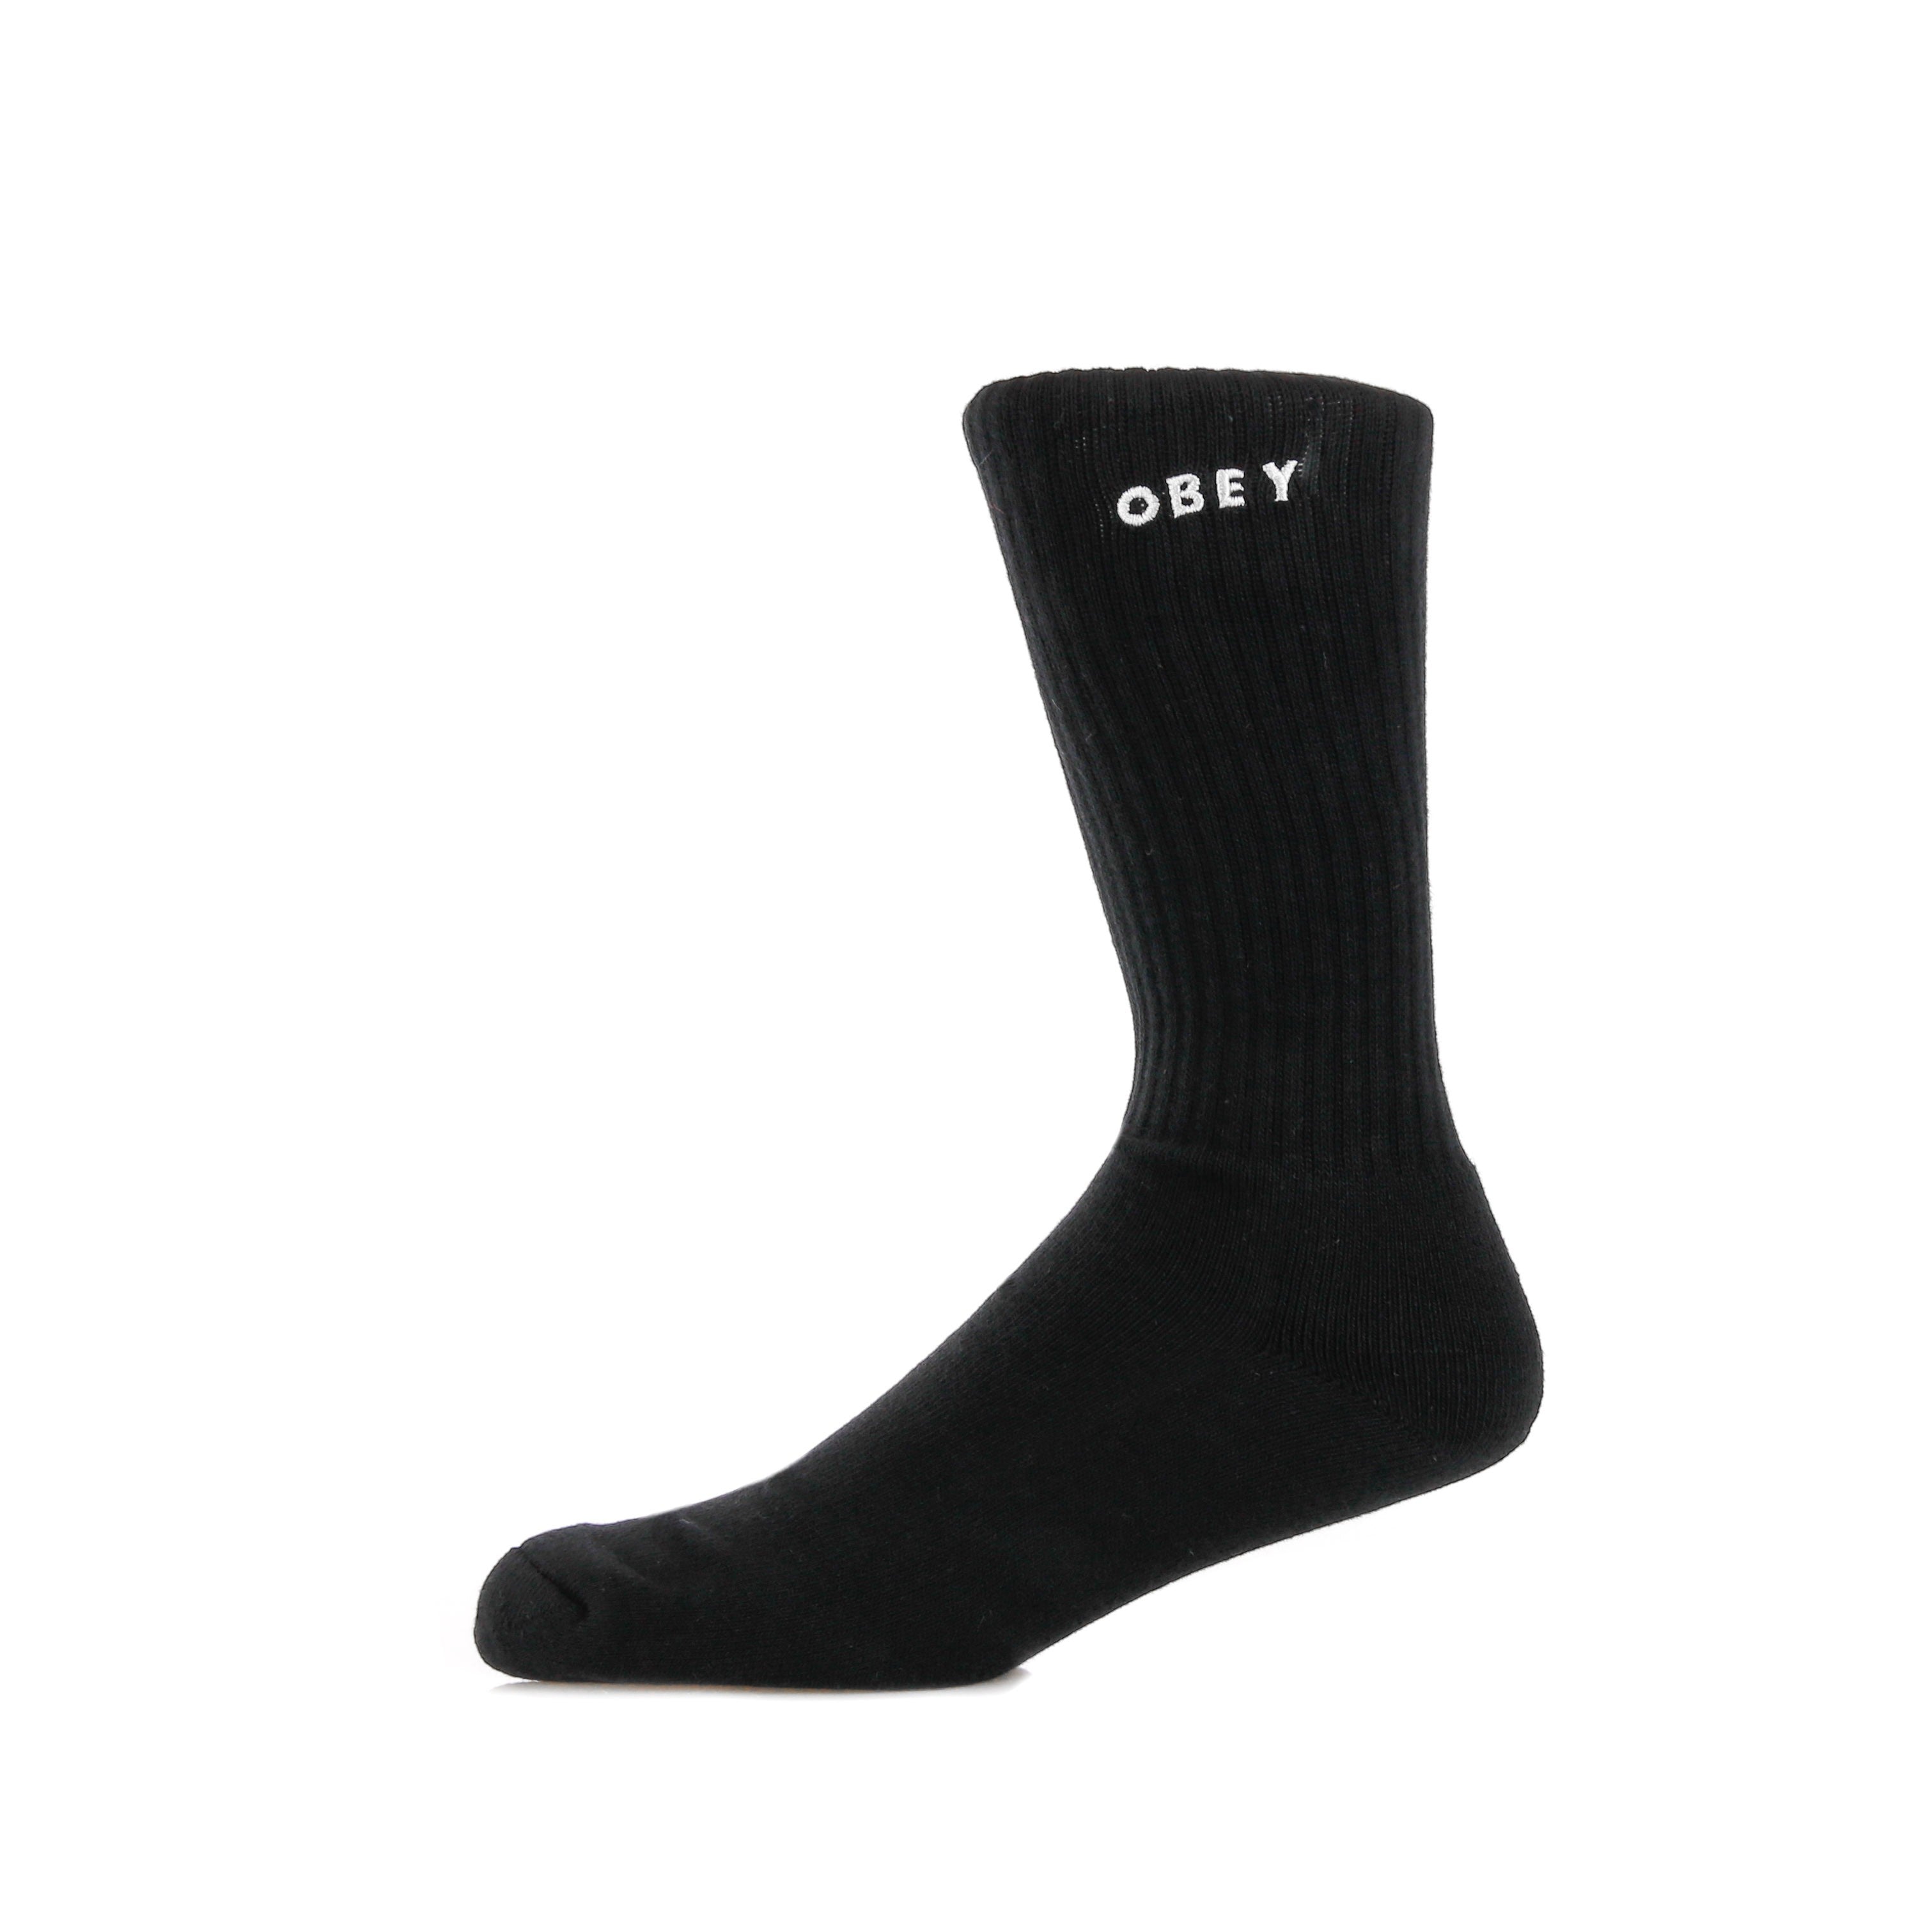 Obey, Calza Media Uomo Bold Socks, Black